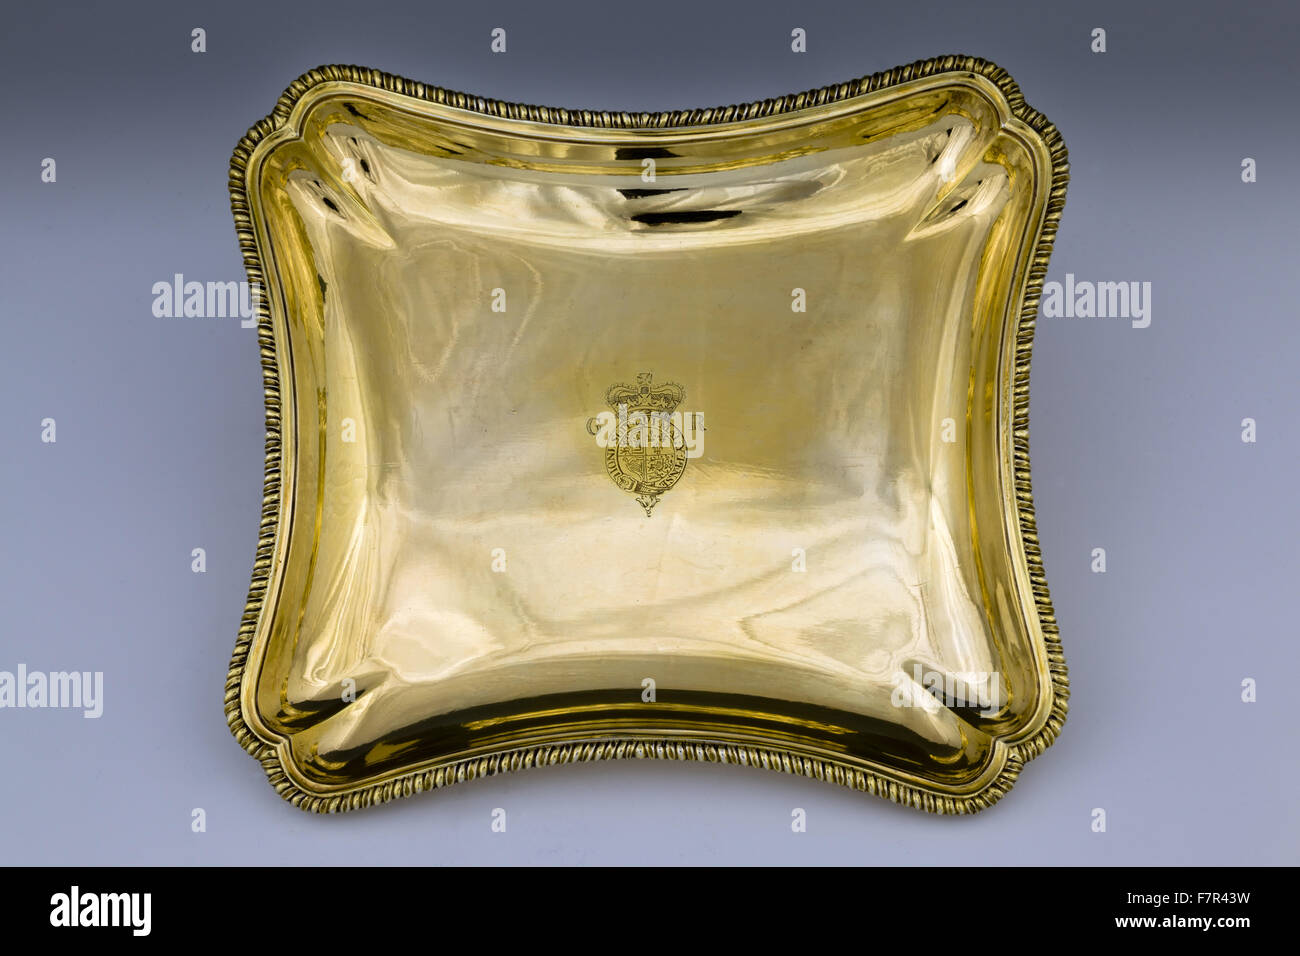 La forma di un cuscino piatto, 1769, Frederick Kandler, in argento dorato, a Ickworth, Suffolk. Il National Trust Numero di Inventario 852067.5-7. Foto Stock